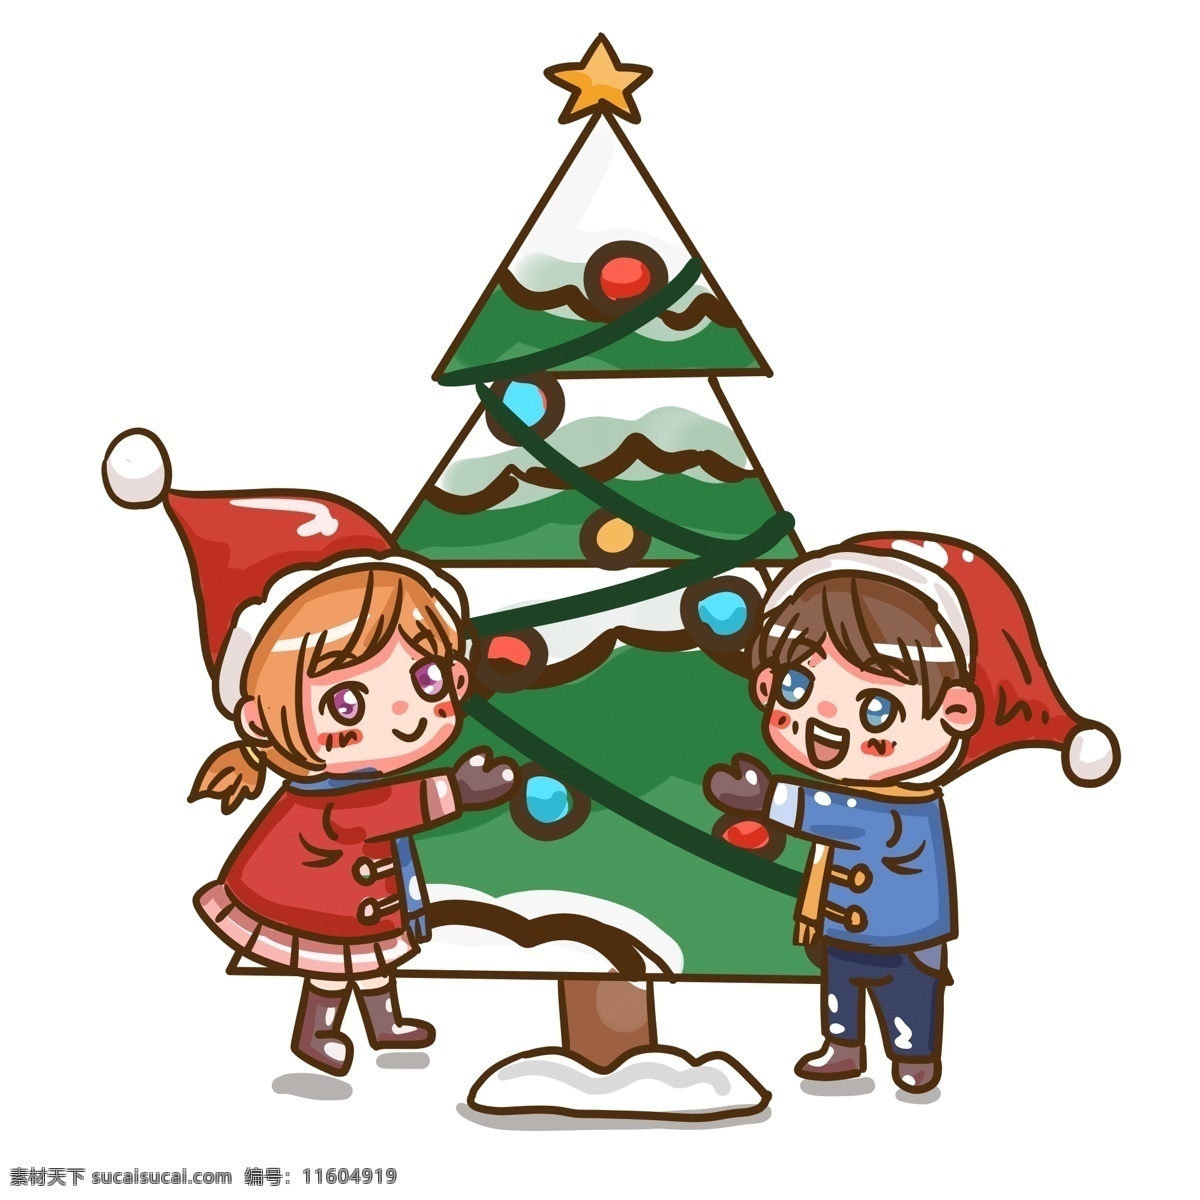 圣诞节 可爱 情侣 圣诞树 庆祝 卡通 手绘 christmas 礼物 圣诞帽 虐狗 萌 小清新